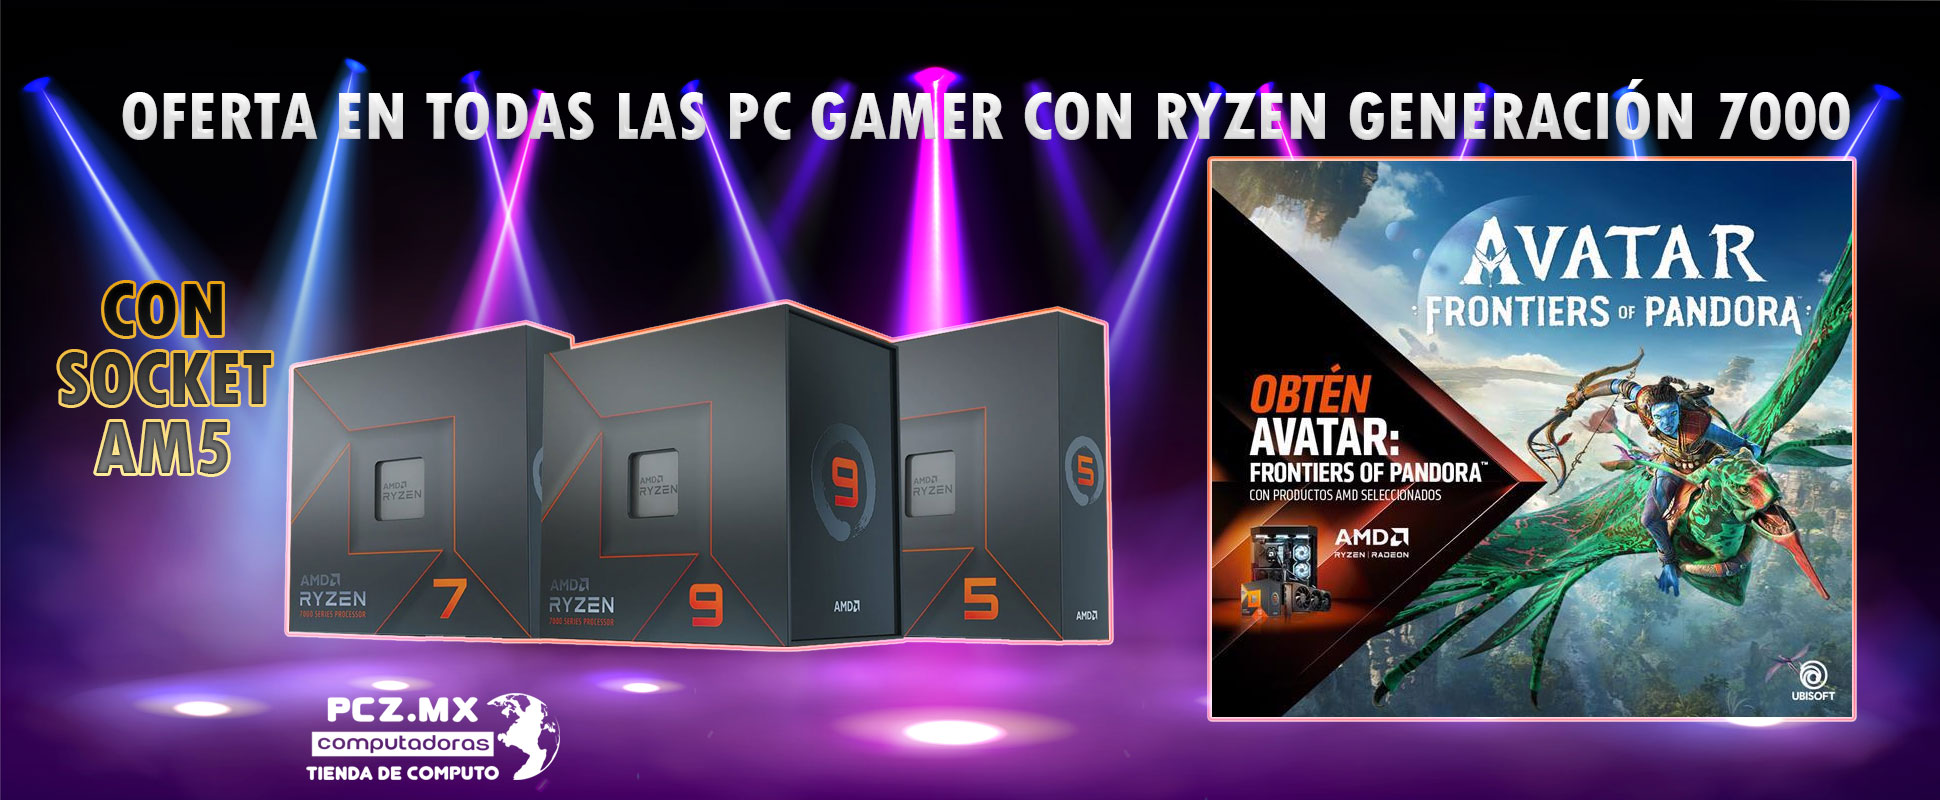 PC GAMER PROMOCION CON AMD